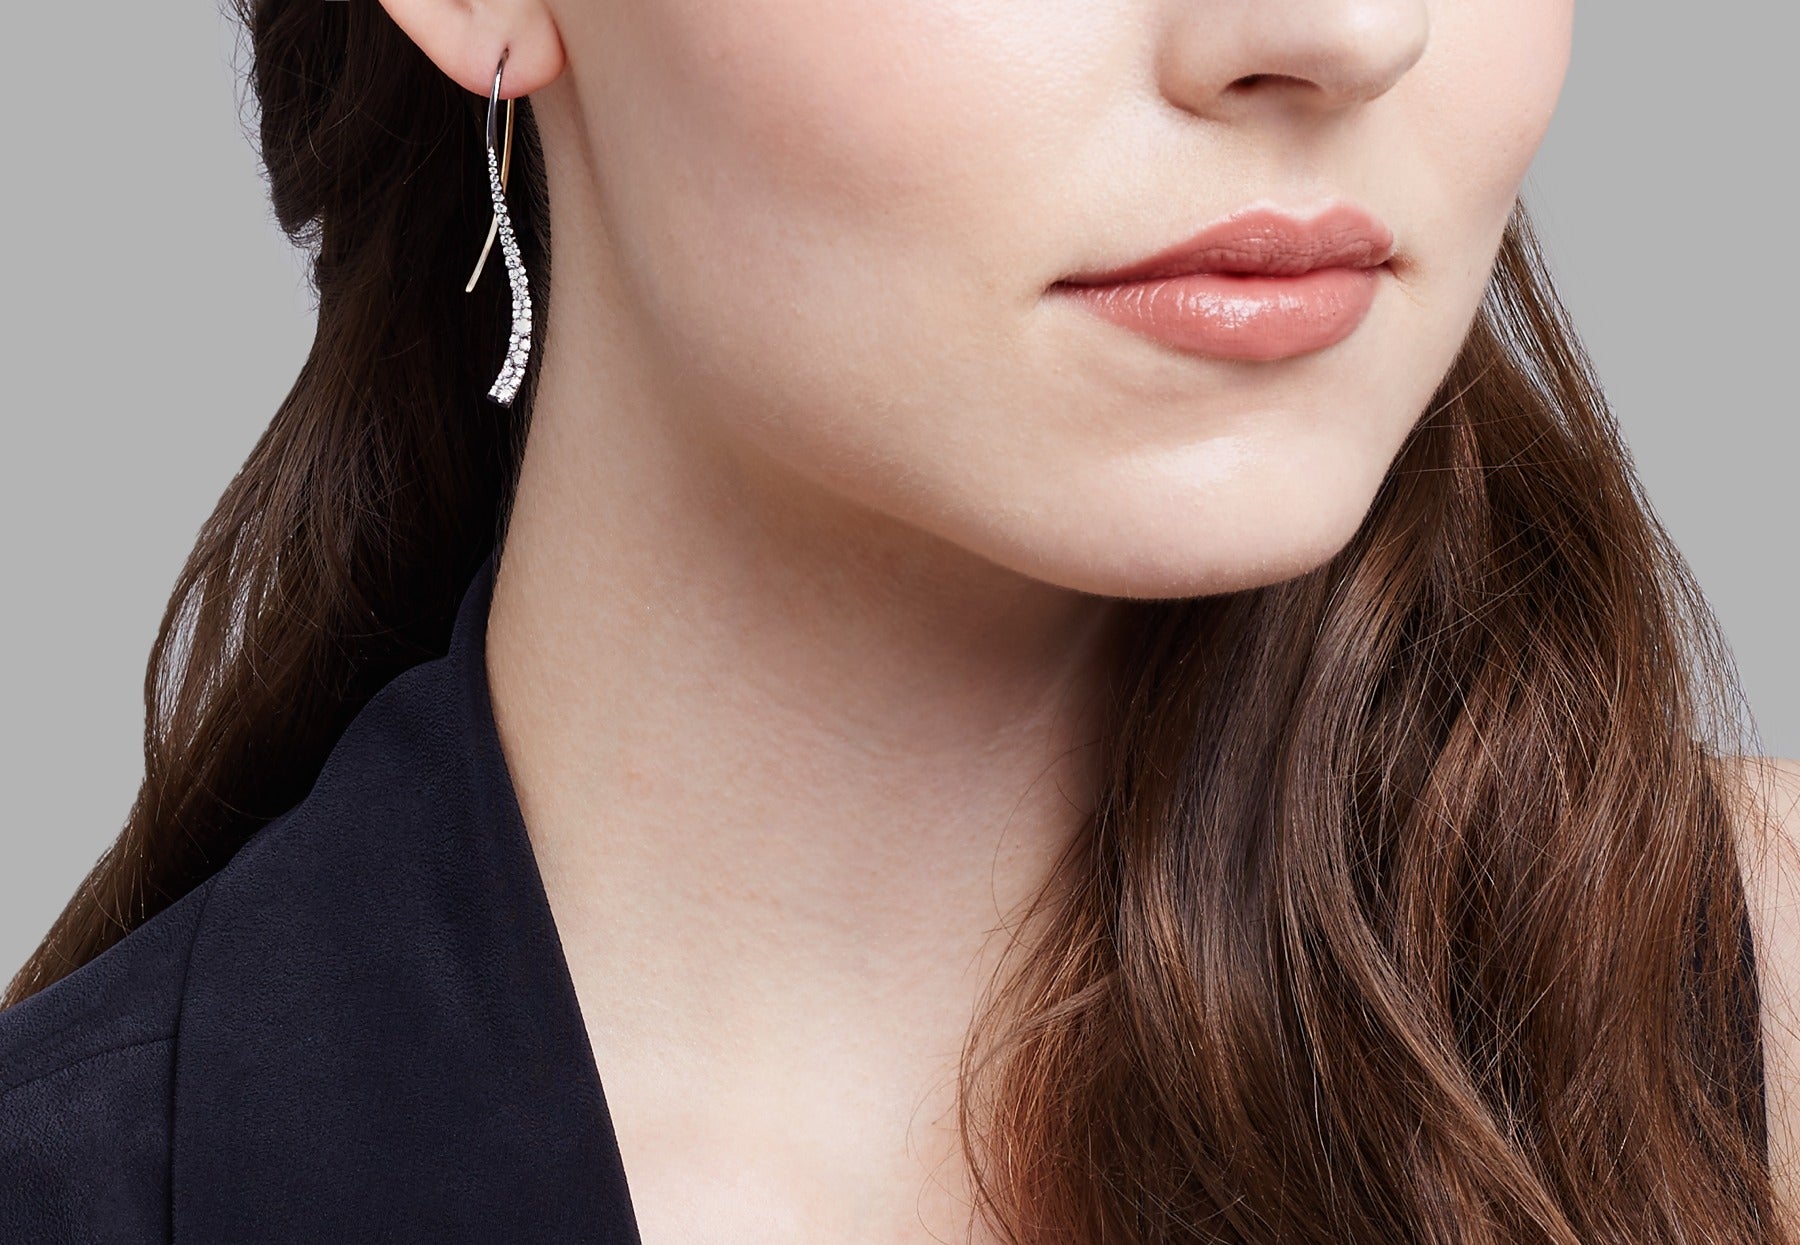 Forged celestial white diamond earrings on model